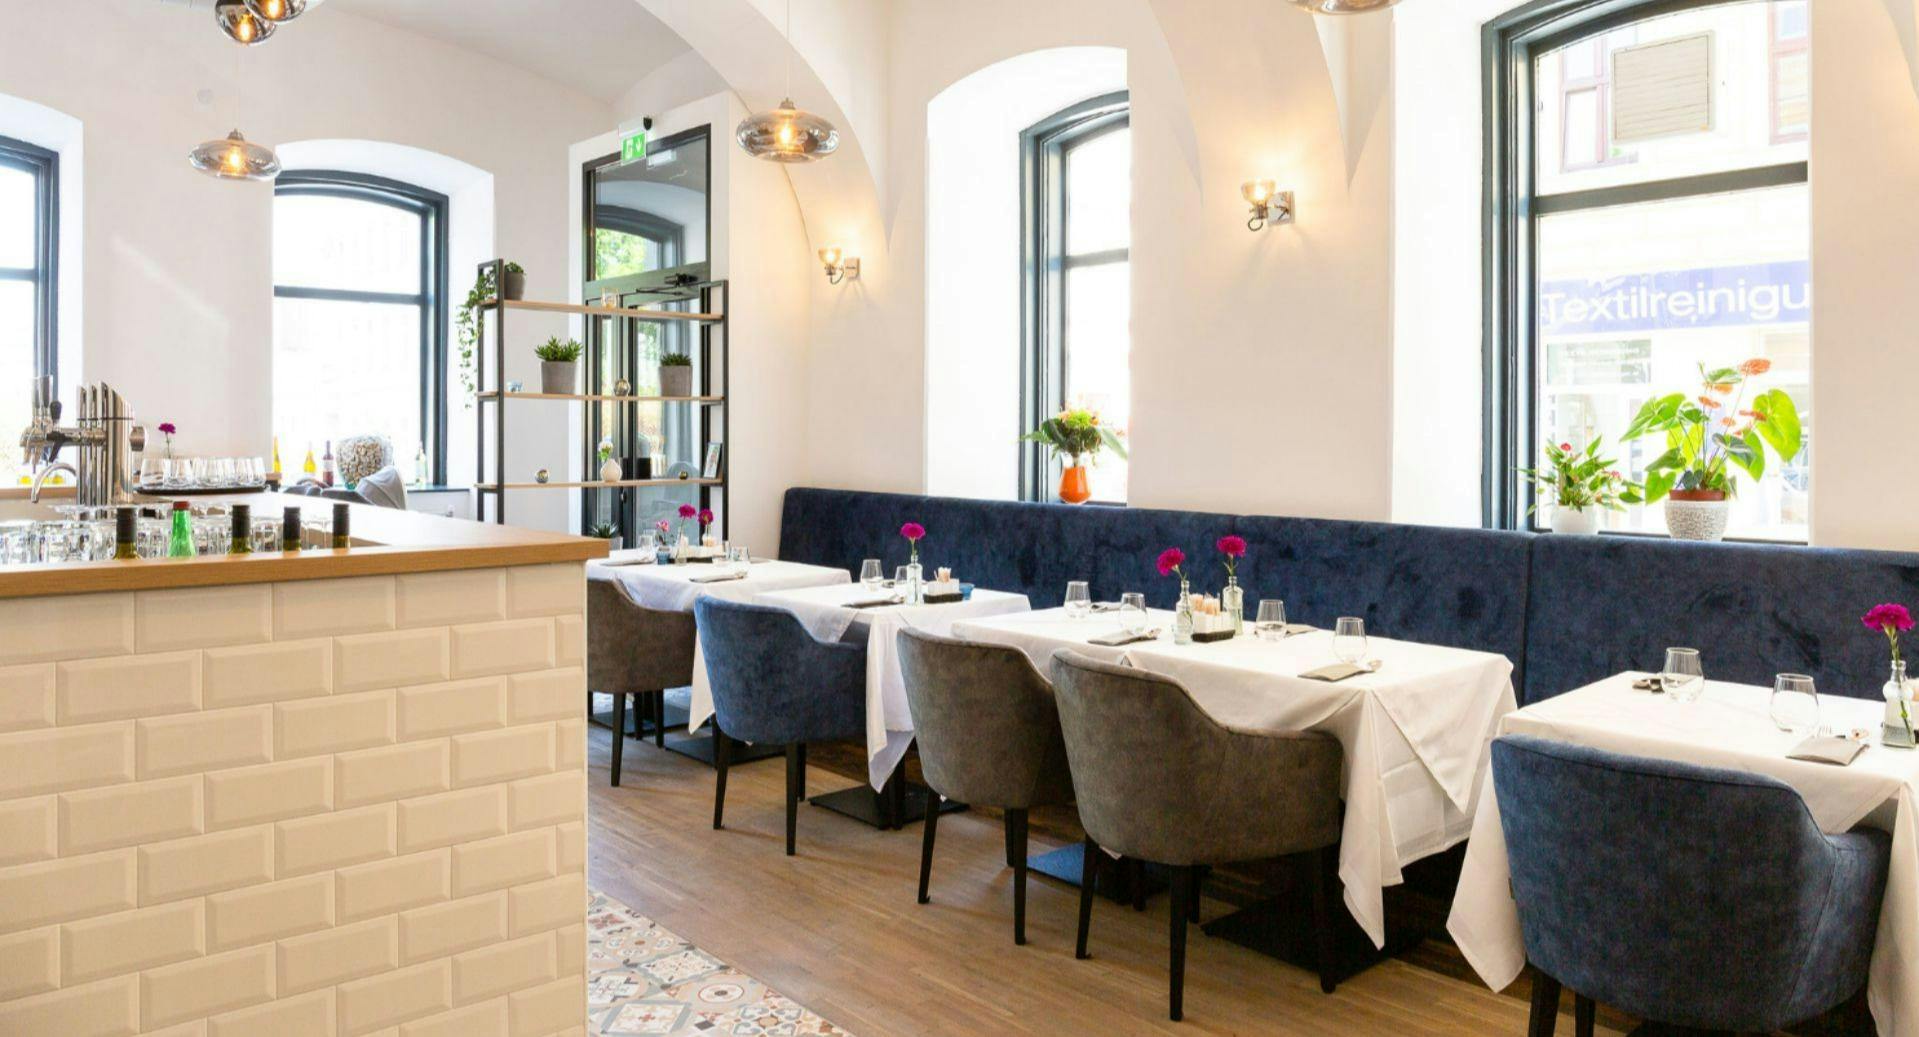 Photo of restaurant Arezu in 8. District, Vienna